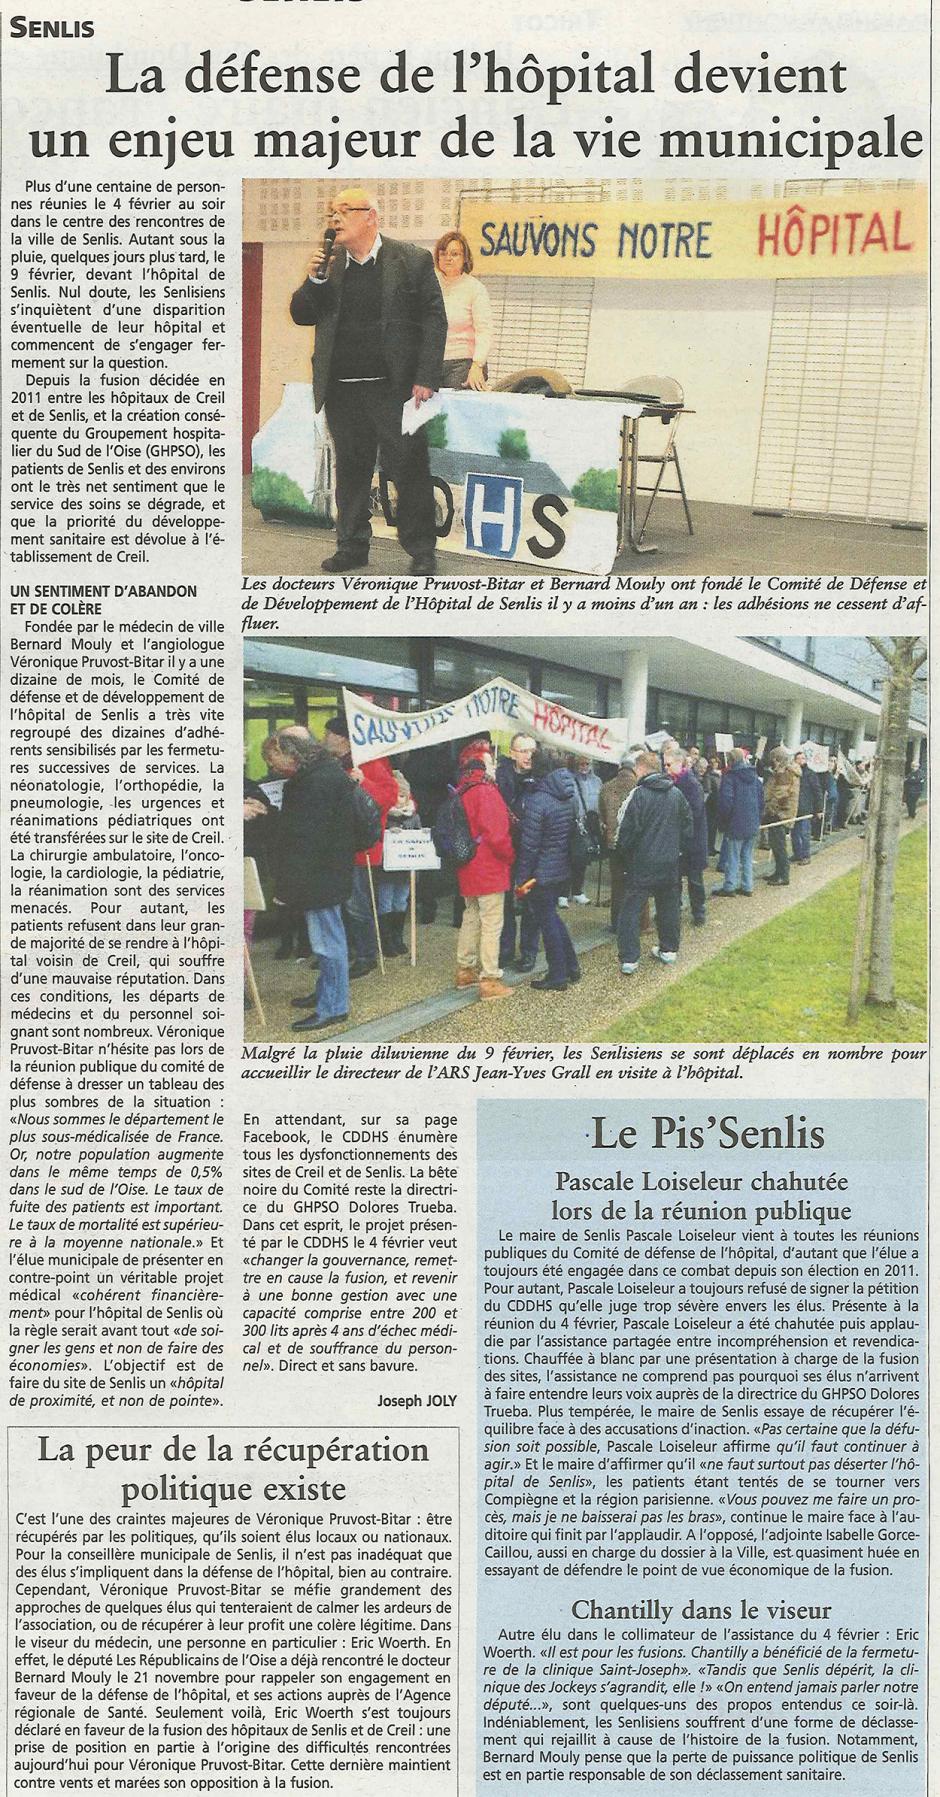 20160210-OH-Senlis-La défense de l'hôpital devient un enjeu majeur de la vie municipale